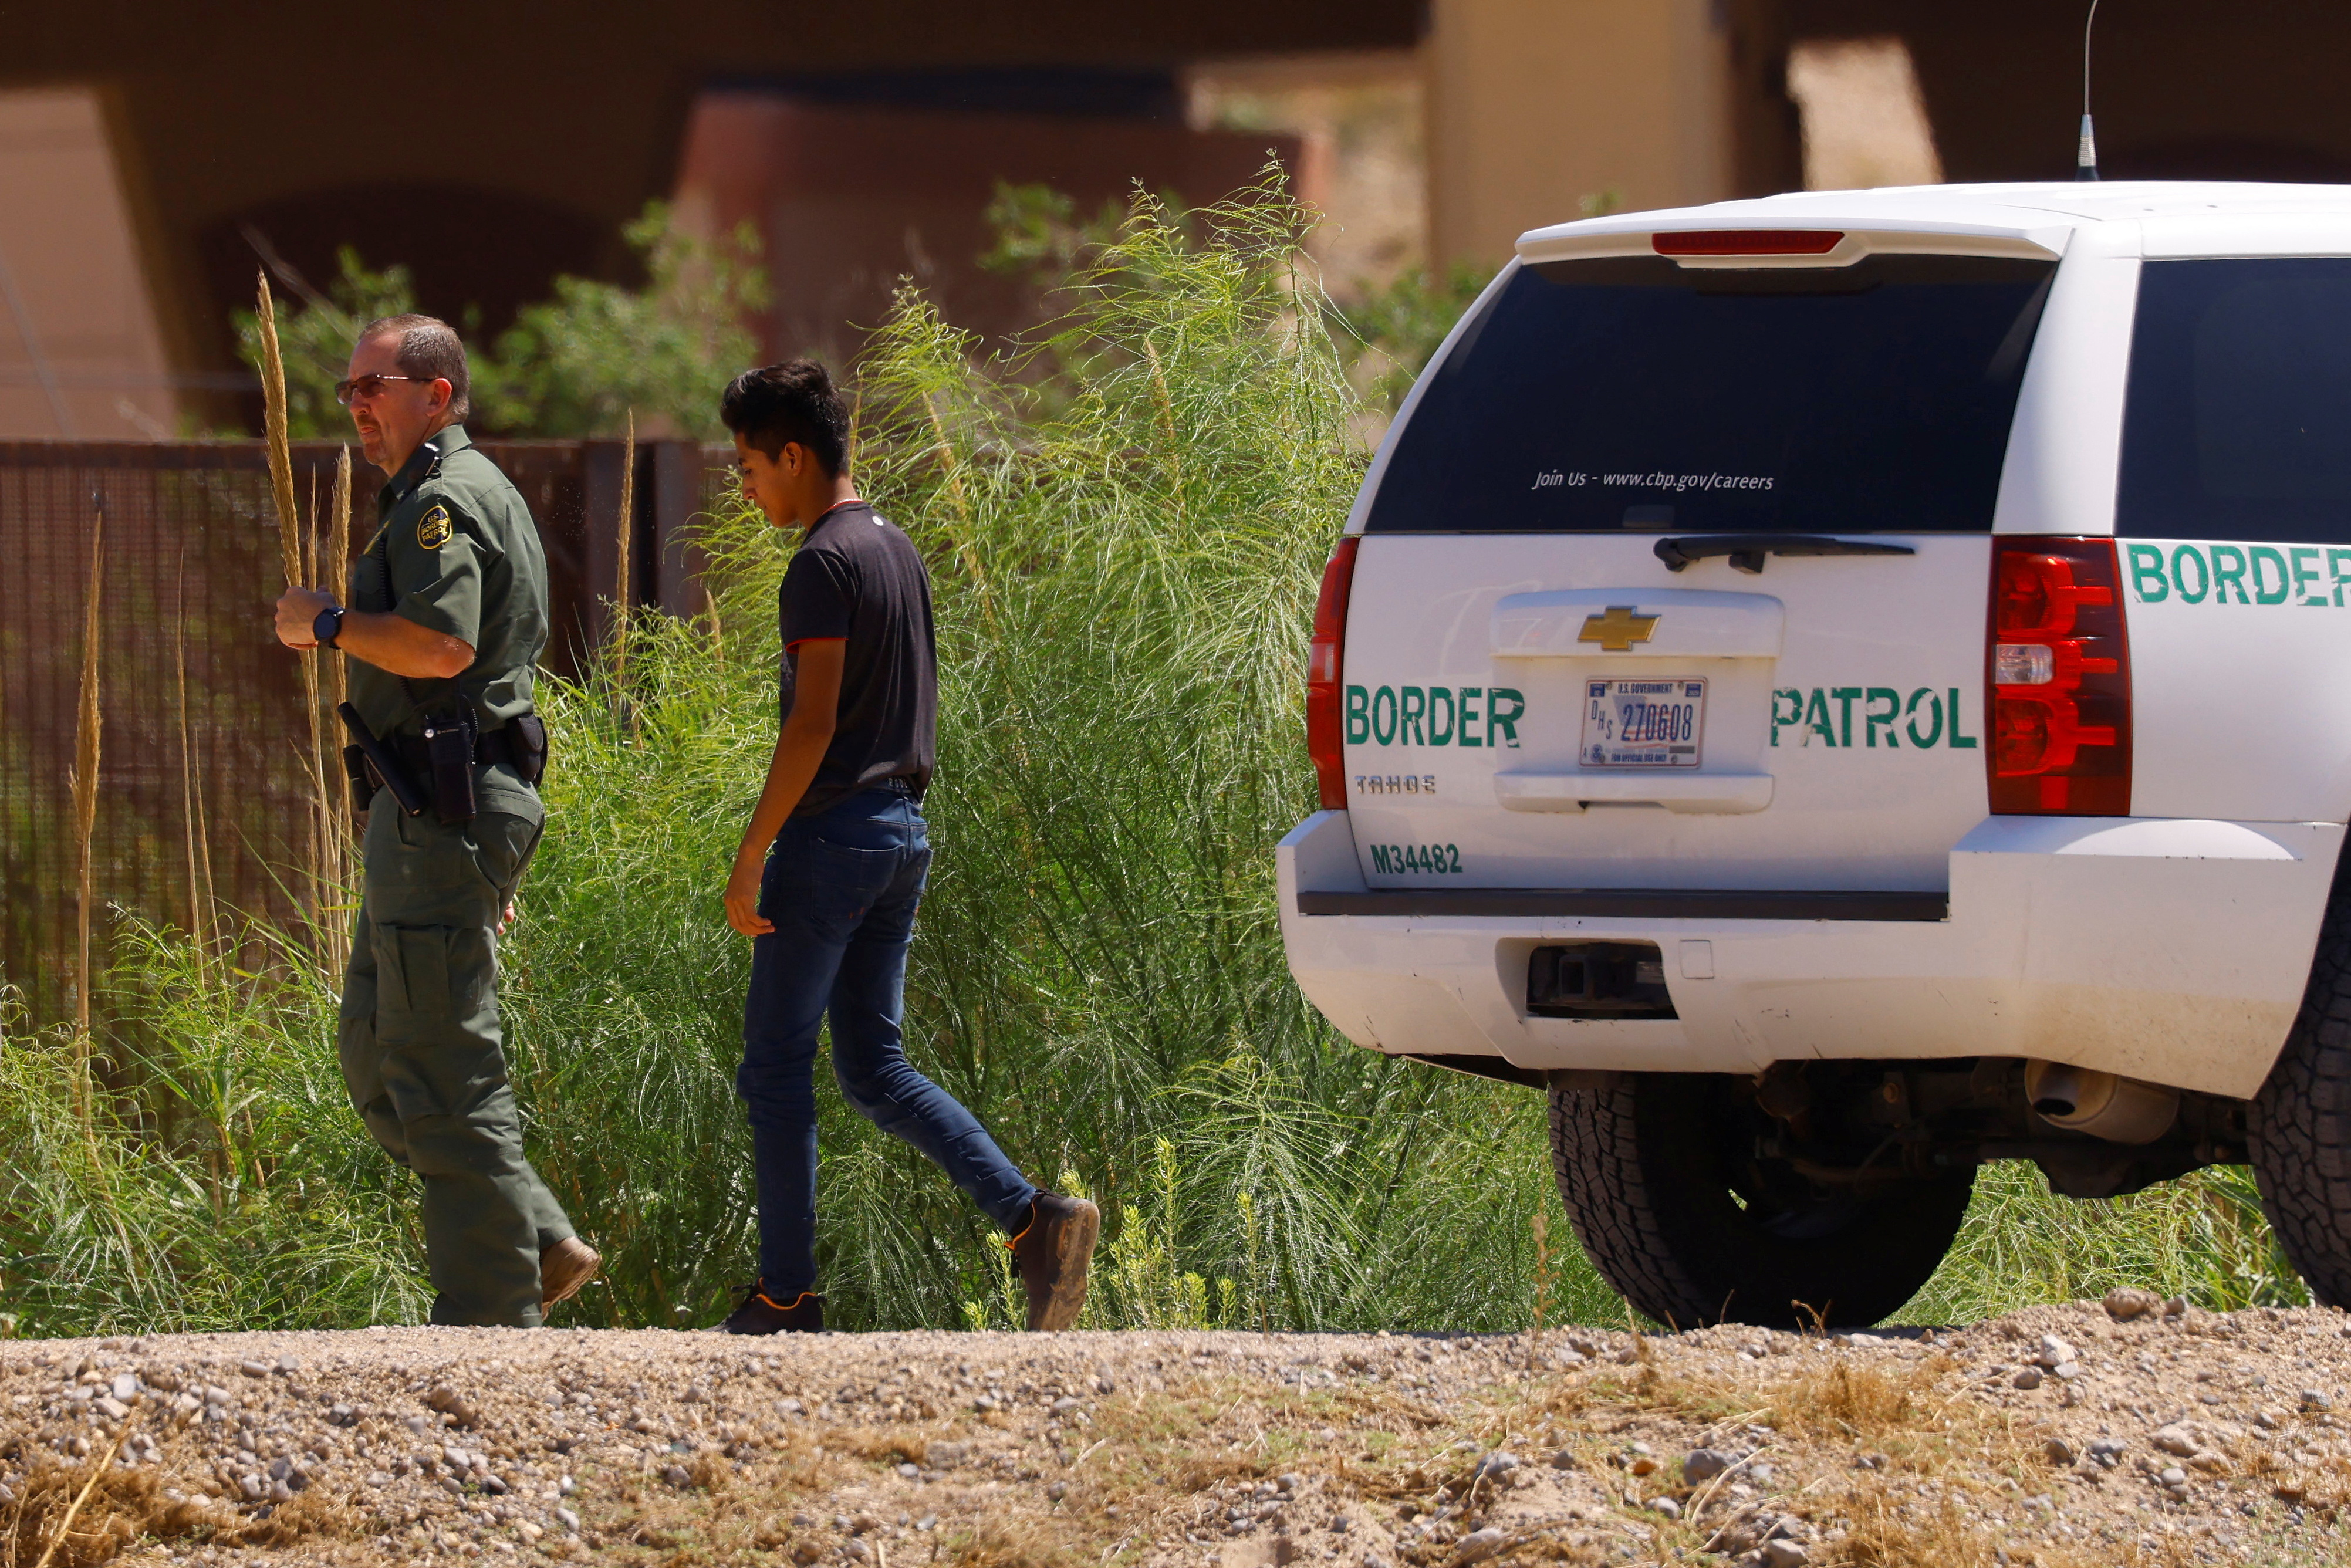 Imagen de referencia de la patrulla fronteriza (Foto: REUTERS/Jose Luis Gonzalez)